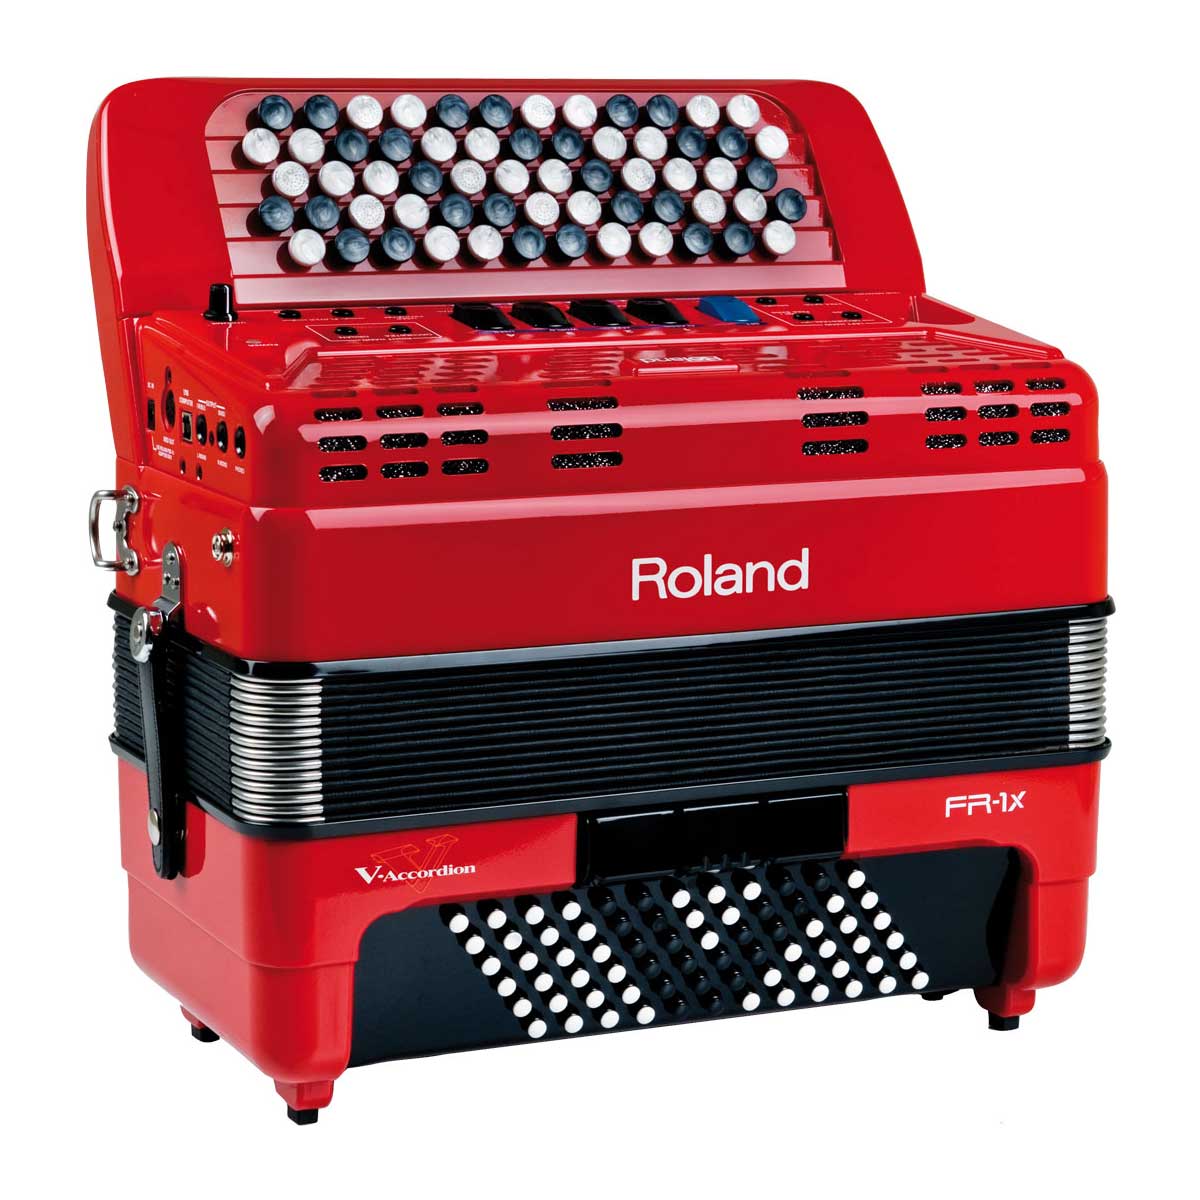 最終決算 Roland 電子アコーディオン V-accordion FR-1Xb